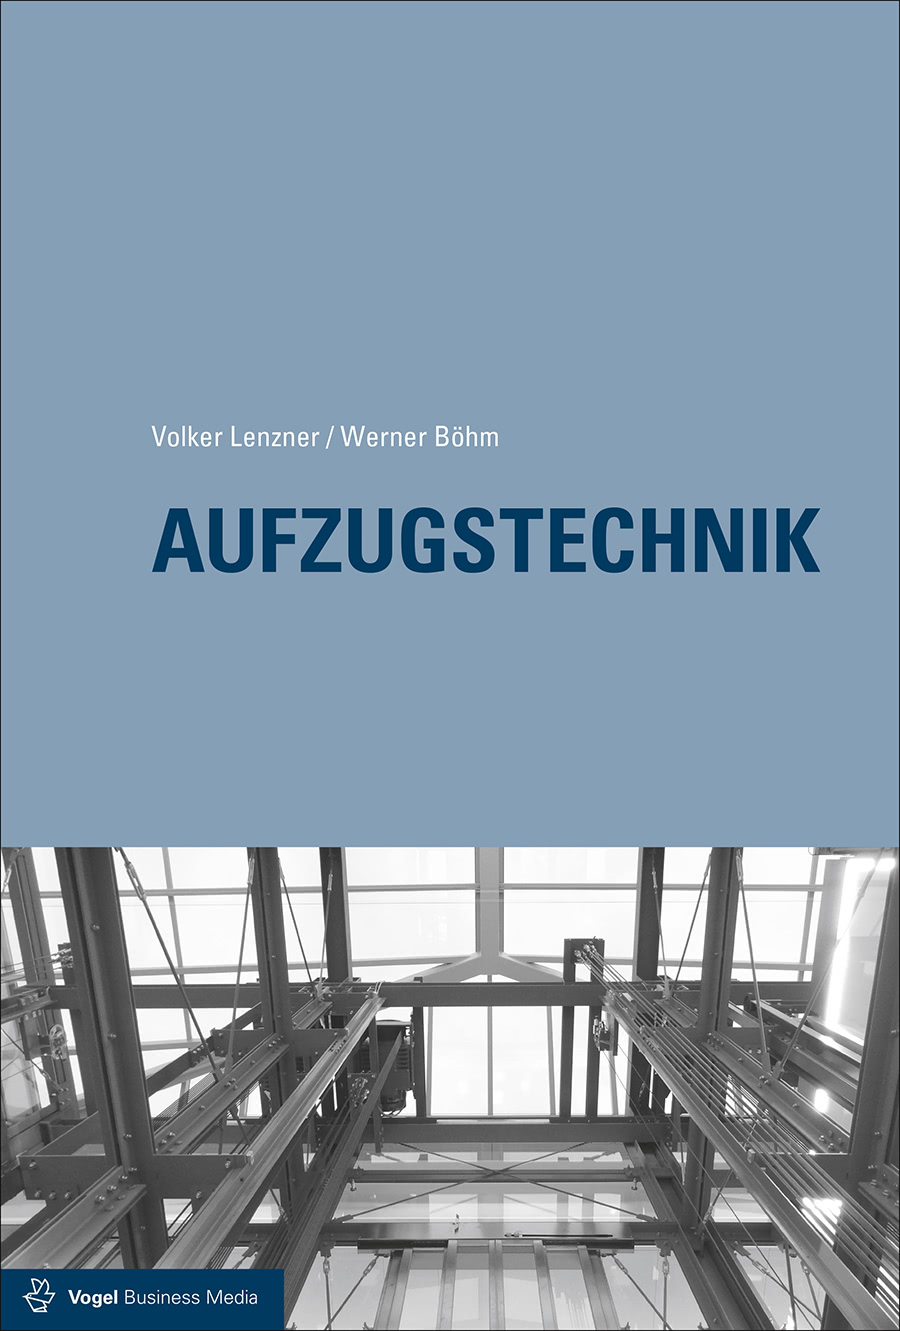 Das Fachbuch "Aufzugstechnik" von Volker Lenzner und Werner Böhm